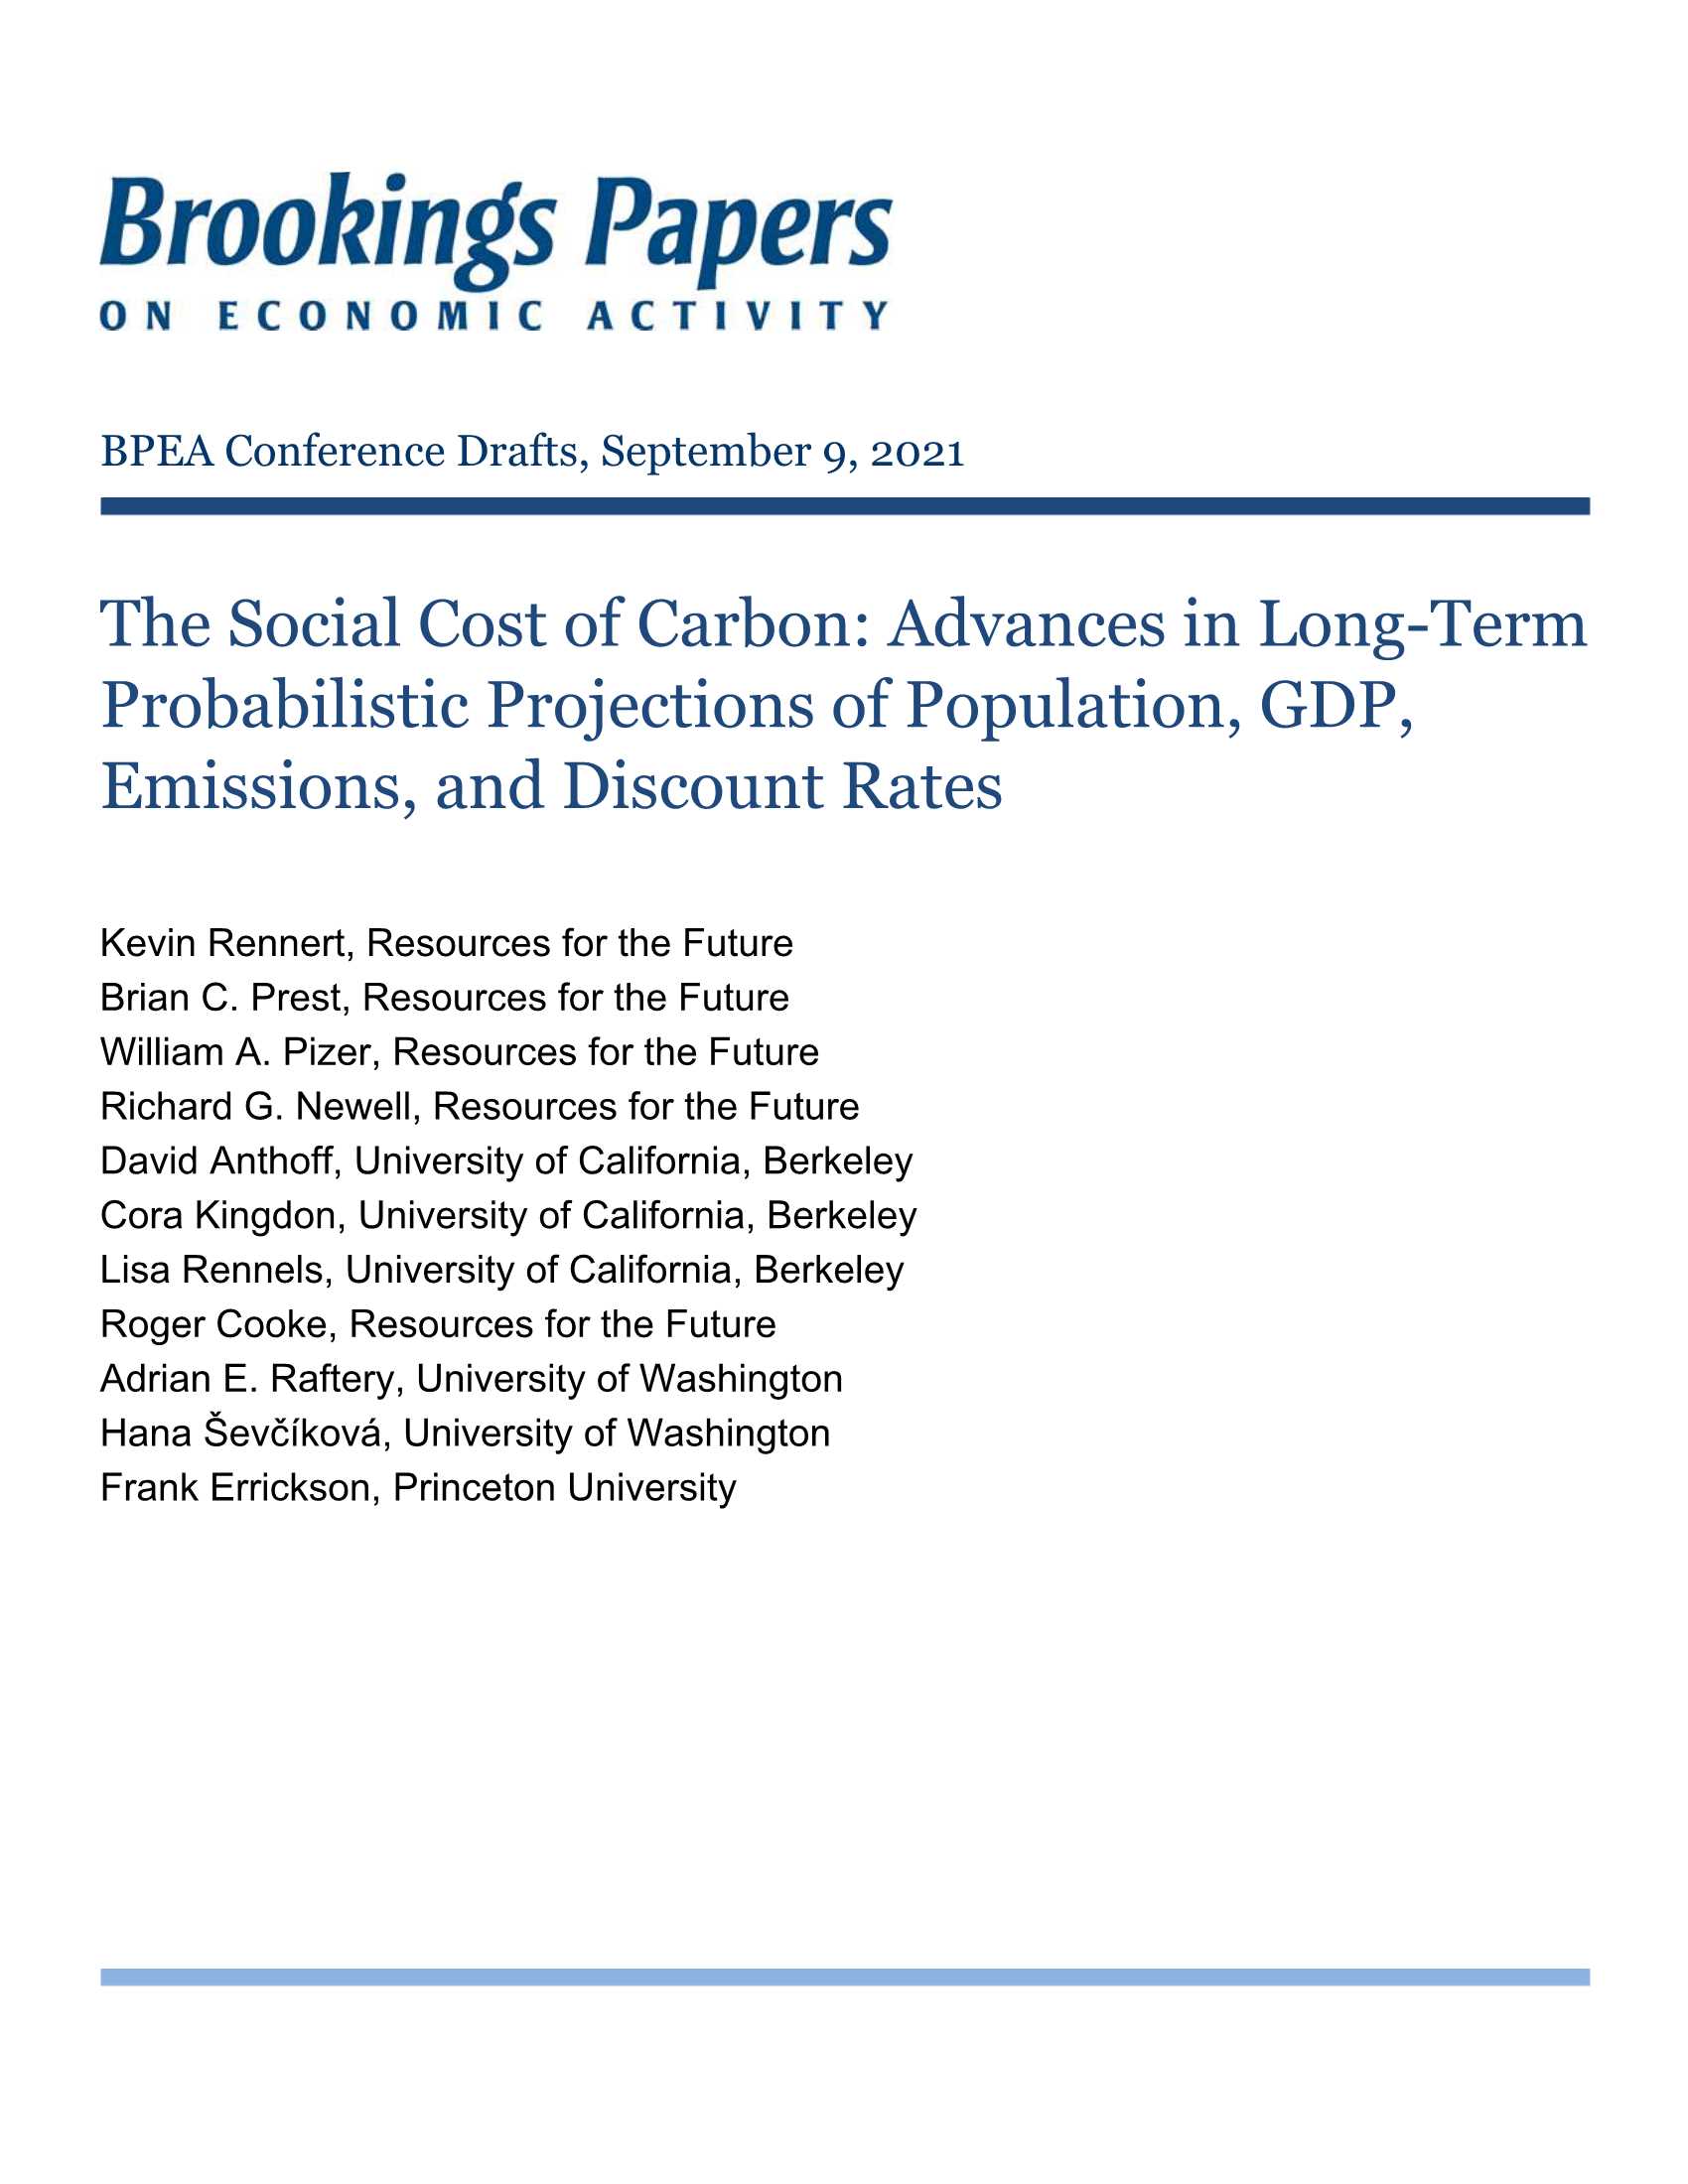 未来能源研究所-碳的社会成本：人口、GDP、排放量和贴现率的长期概率预测进展（英）-2021.09-81页